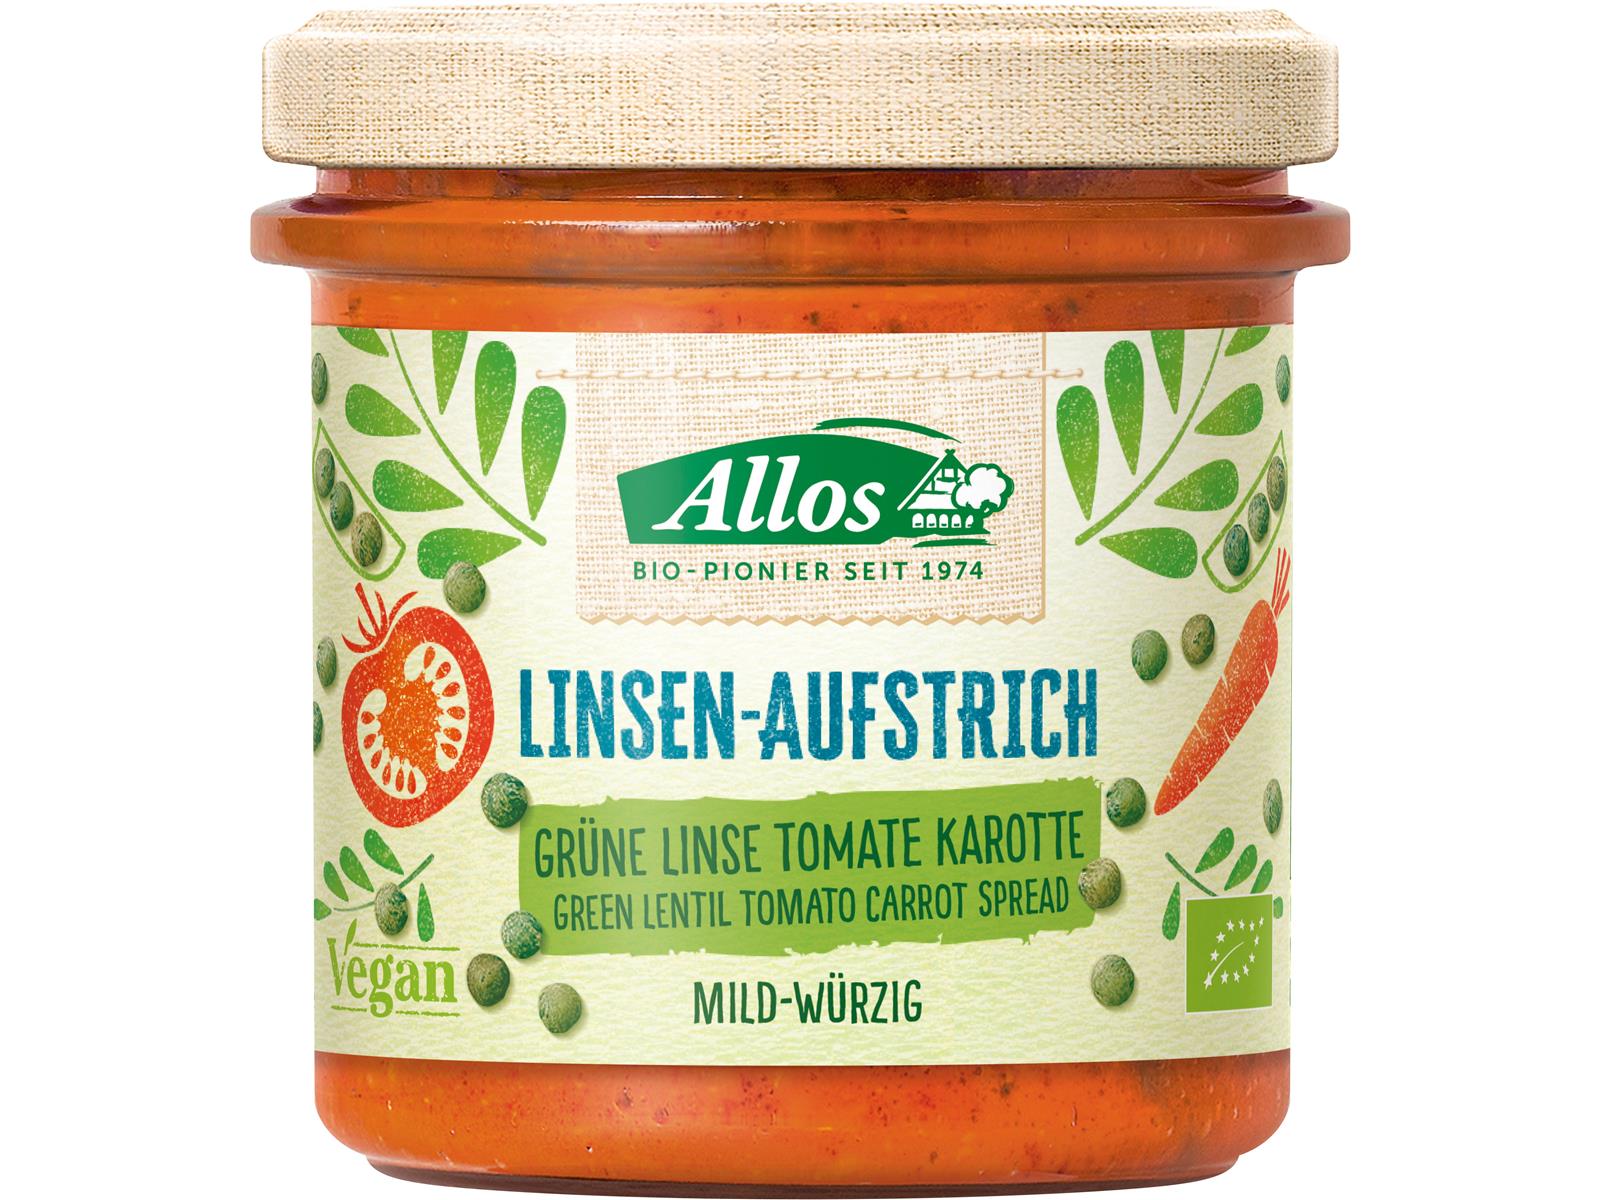 Allos Linsen-Aufstrich Grüne Linse Tomate Karotte 140 g